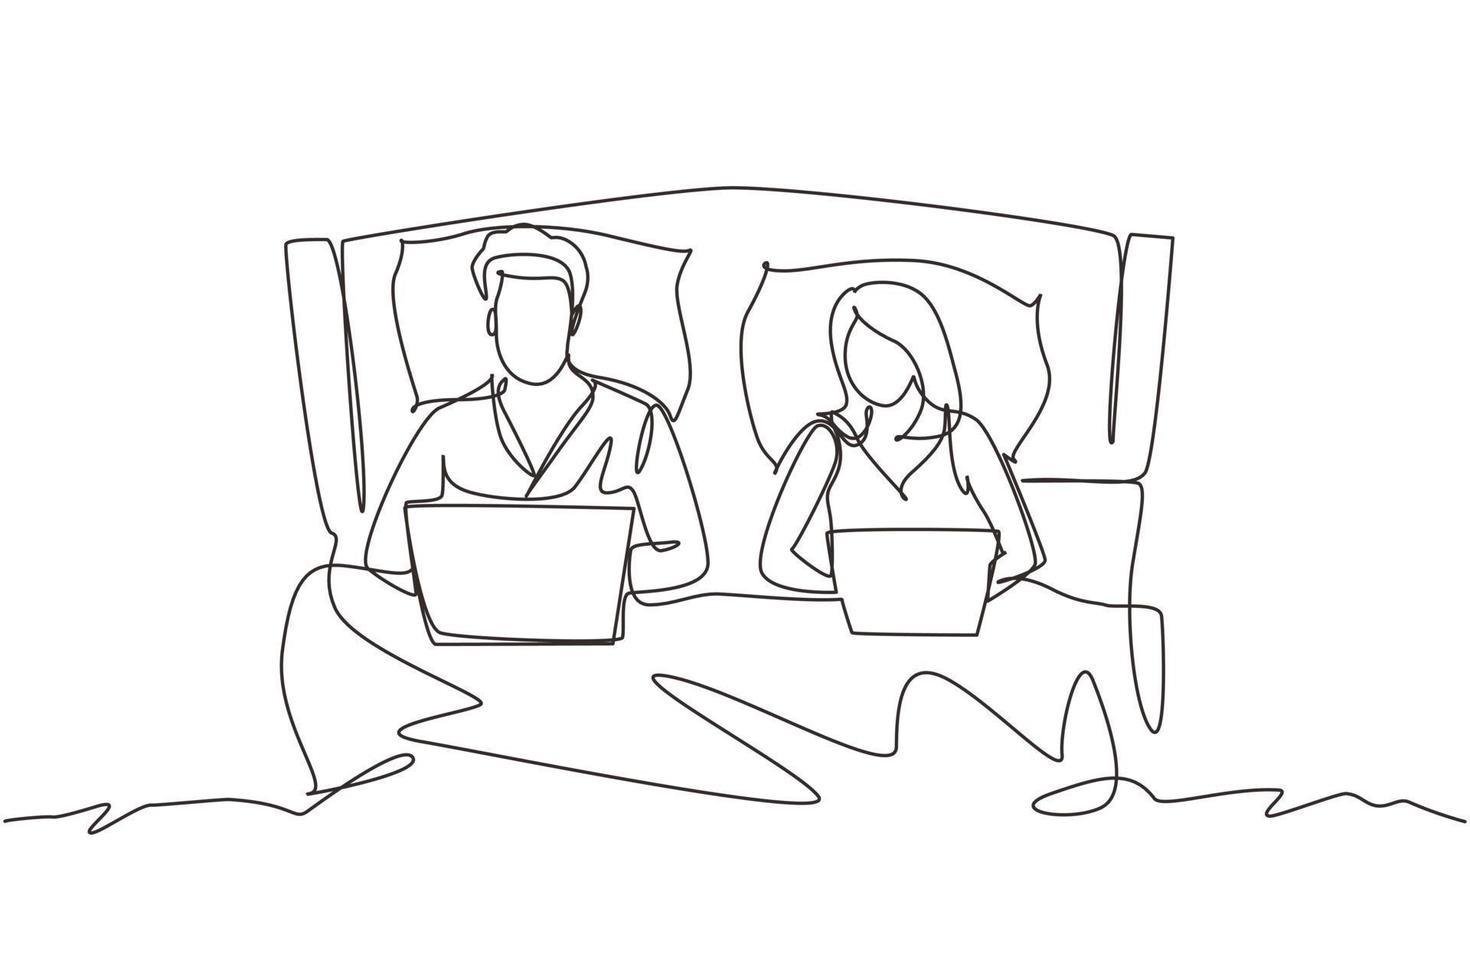 kontinuierliche einzeilige zeichnung paar im bett. mann und frau mit laptop surfen im internet. glückliche eheaktivität vor dem schlafen. romantisches paar, das sich im schlafzimmer ausruht. einzeiliges zeichnen design vektorgrafik vektor